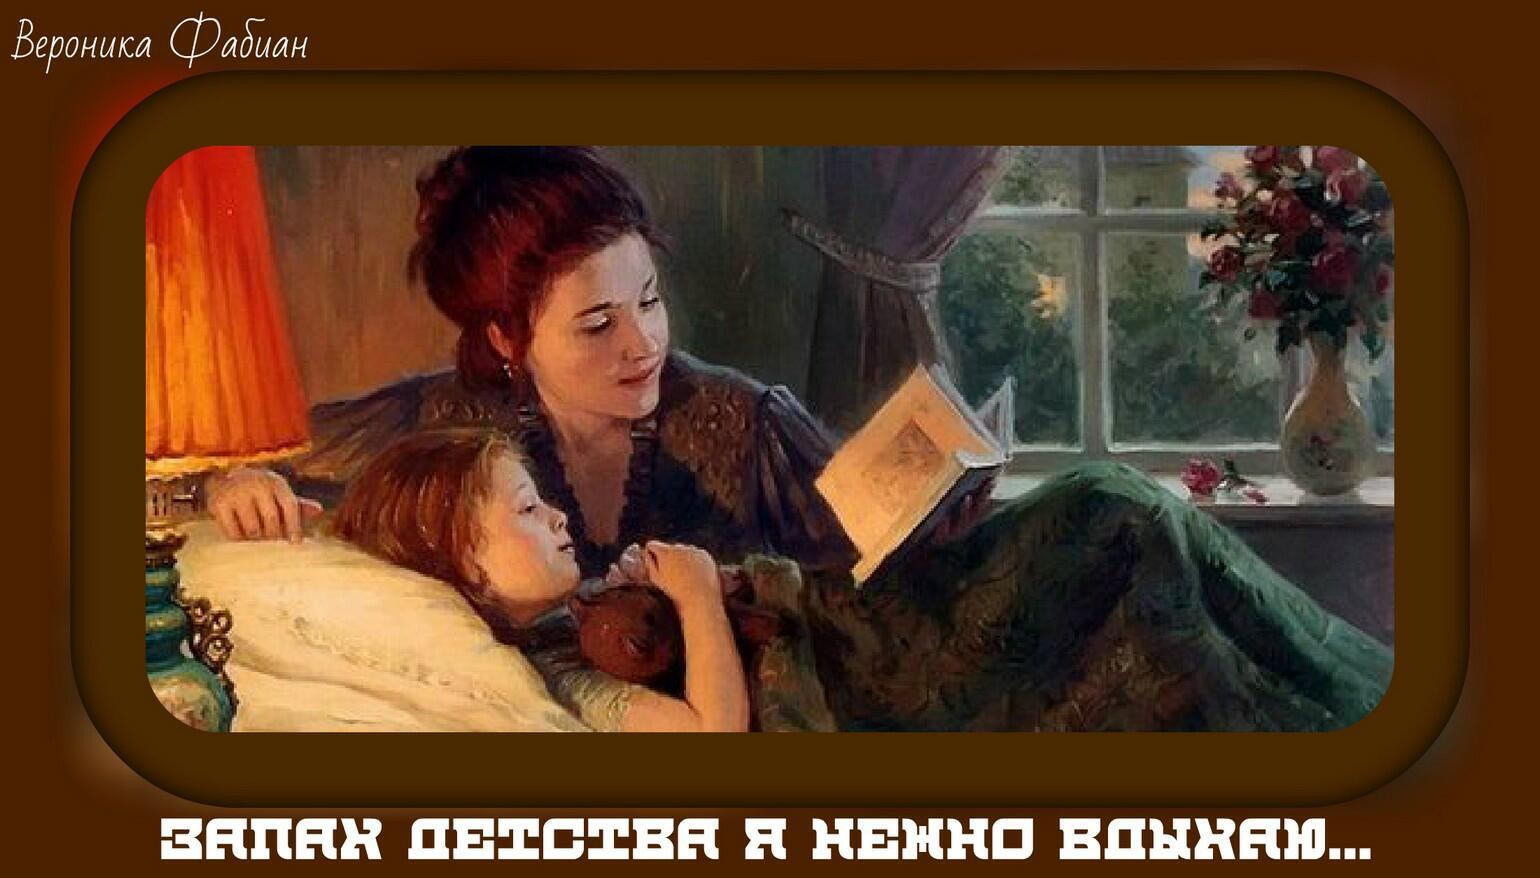 Читать мама с другом. Мама рассказывает сказку. Чтение в живописи. Мама читает сказку. Читающие дети в живописи.